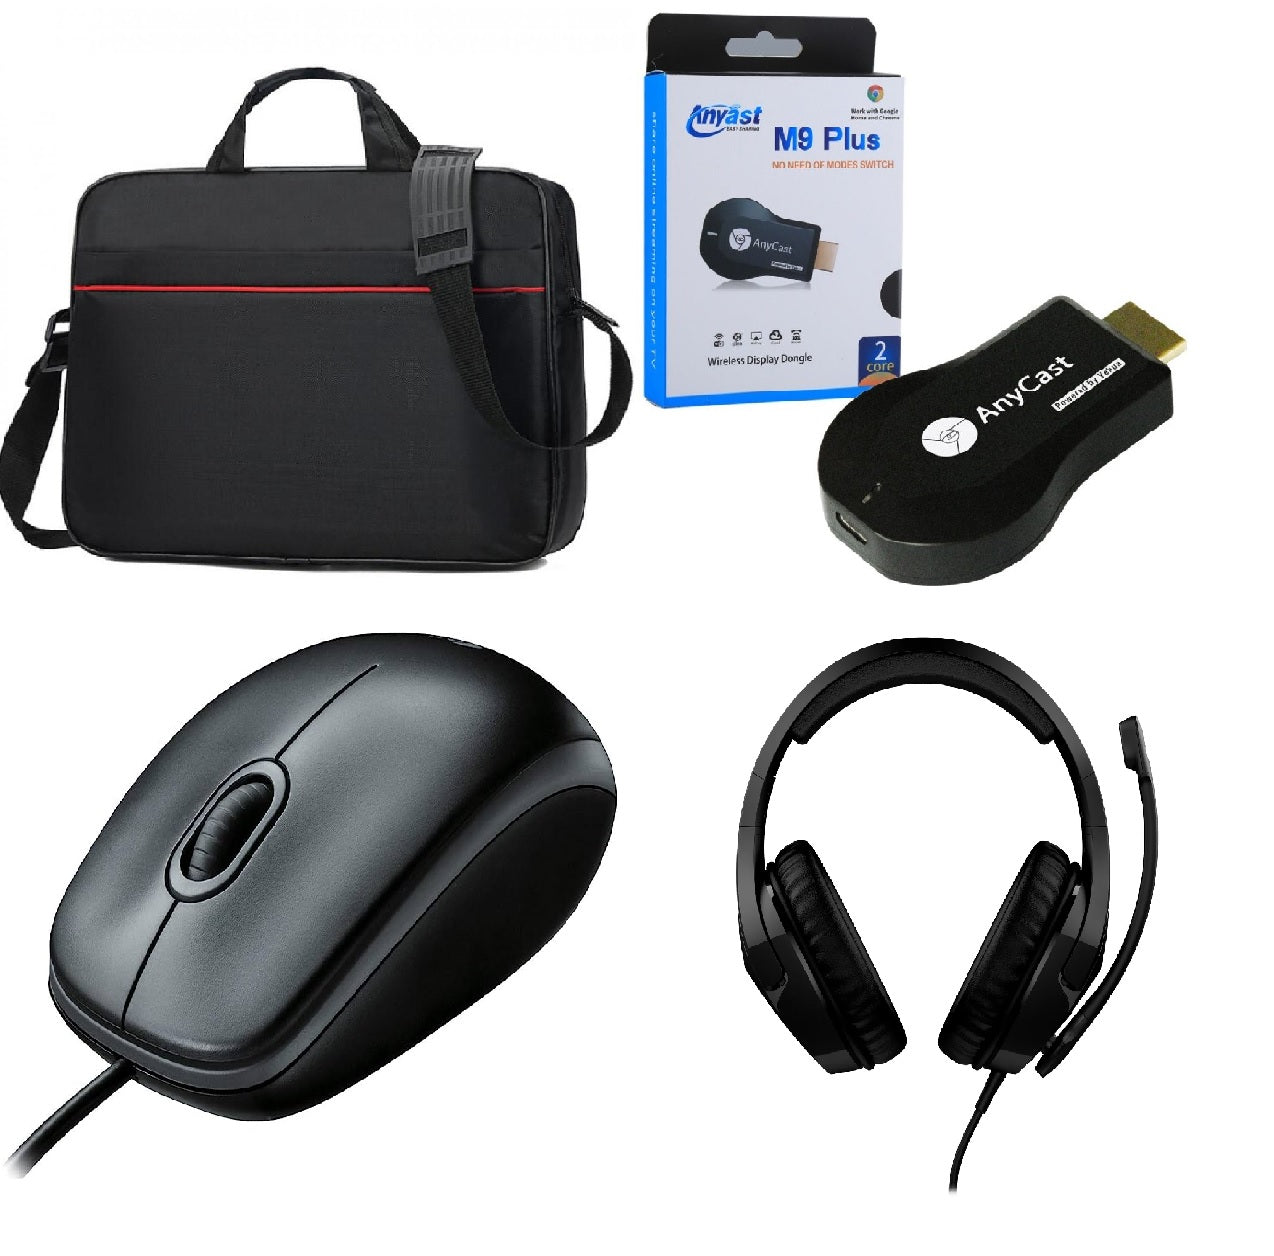 BAG3/Bundle - Laptop BAG + keybord protictive film + cleaner + MOUSE USB + HEADSET case / Black / Wired